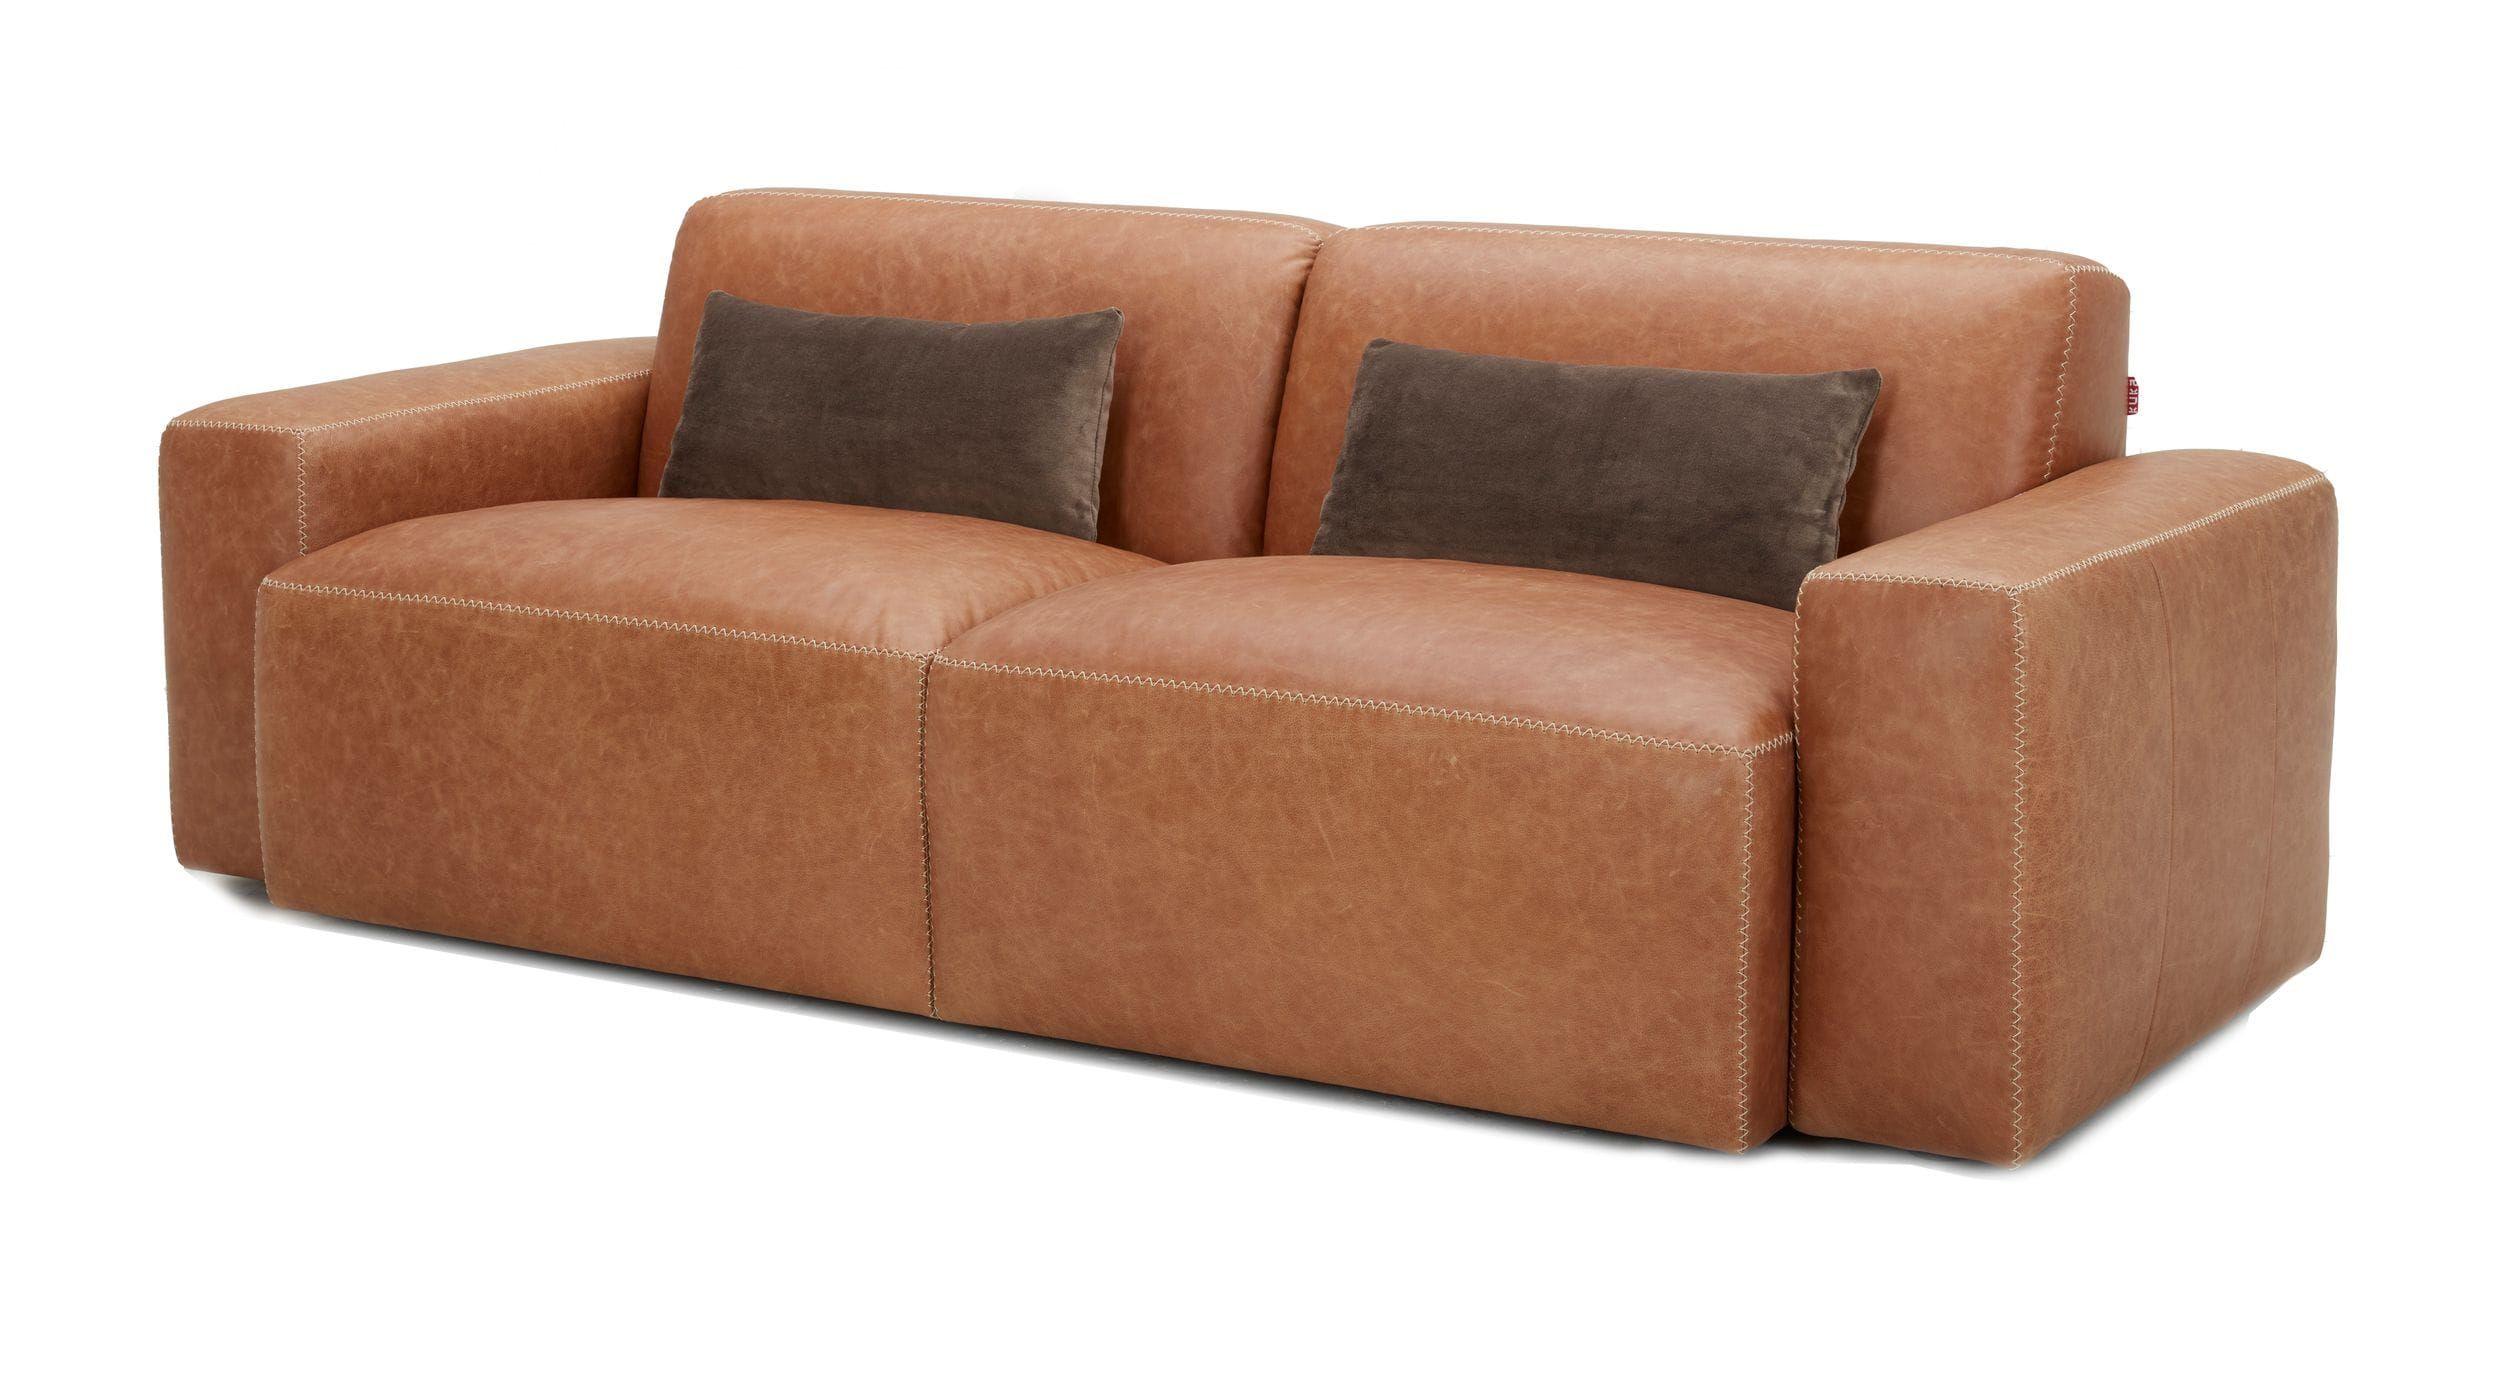 Contemporary, Modern Sofa VGKKKF055-BRN-S VGKKKF055-BRN-S in Brown Genuine Leather